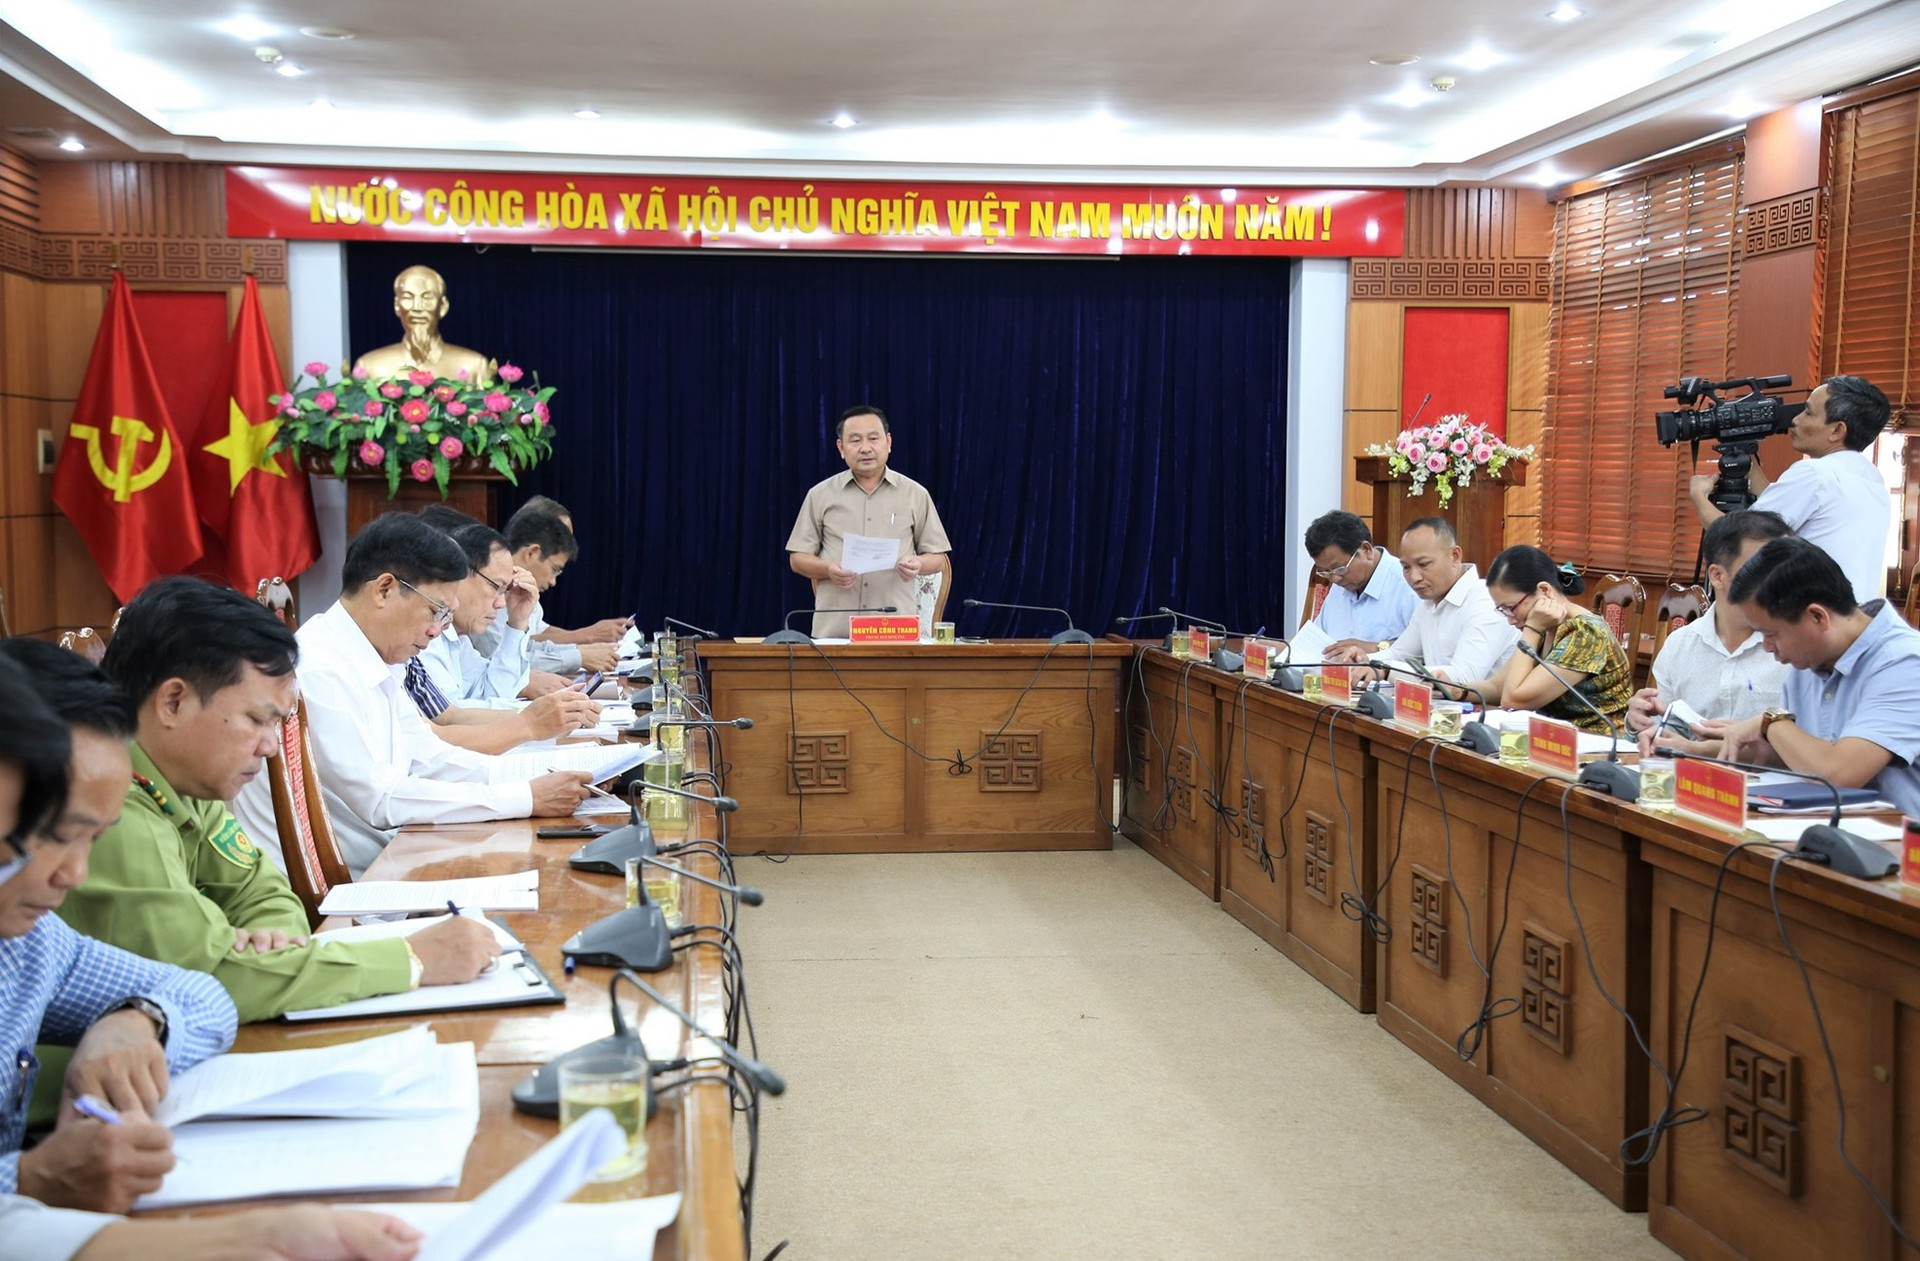 Phó Chủ tịch HĐND tỉnh Nguyễn Công Thanh phát biểu tại buổi làm việc. Ảnh: A.N